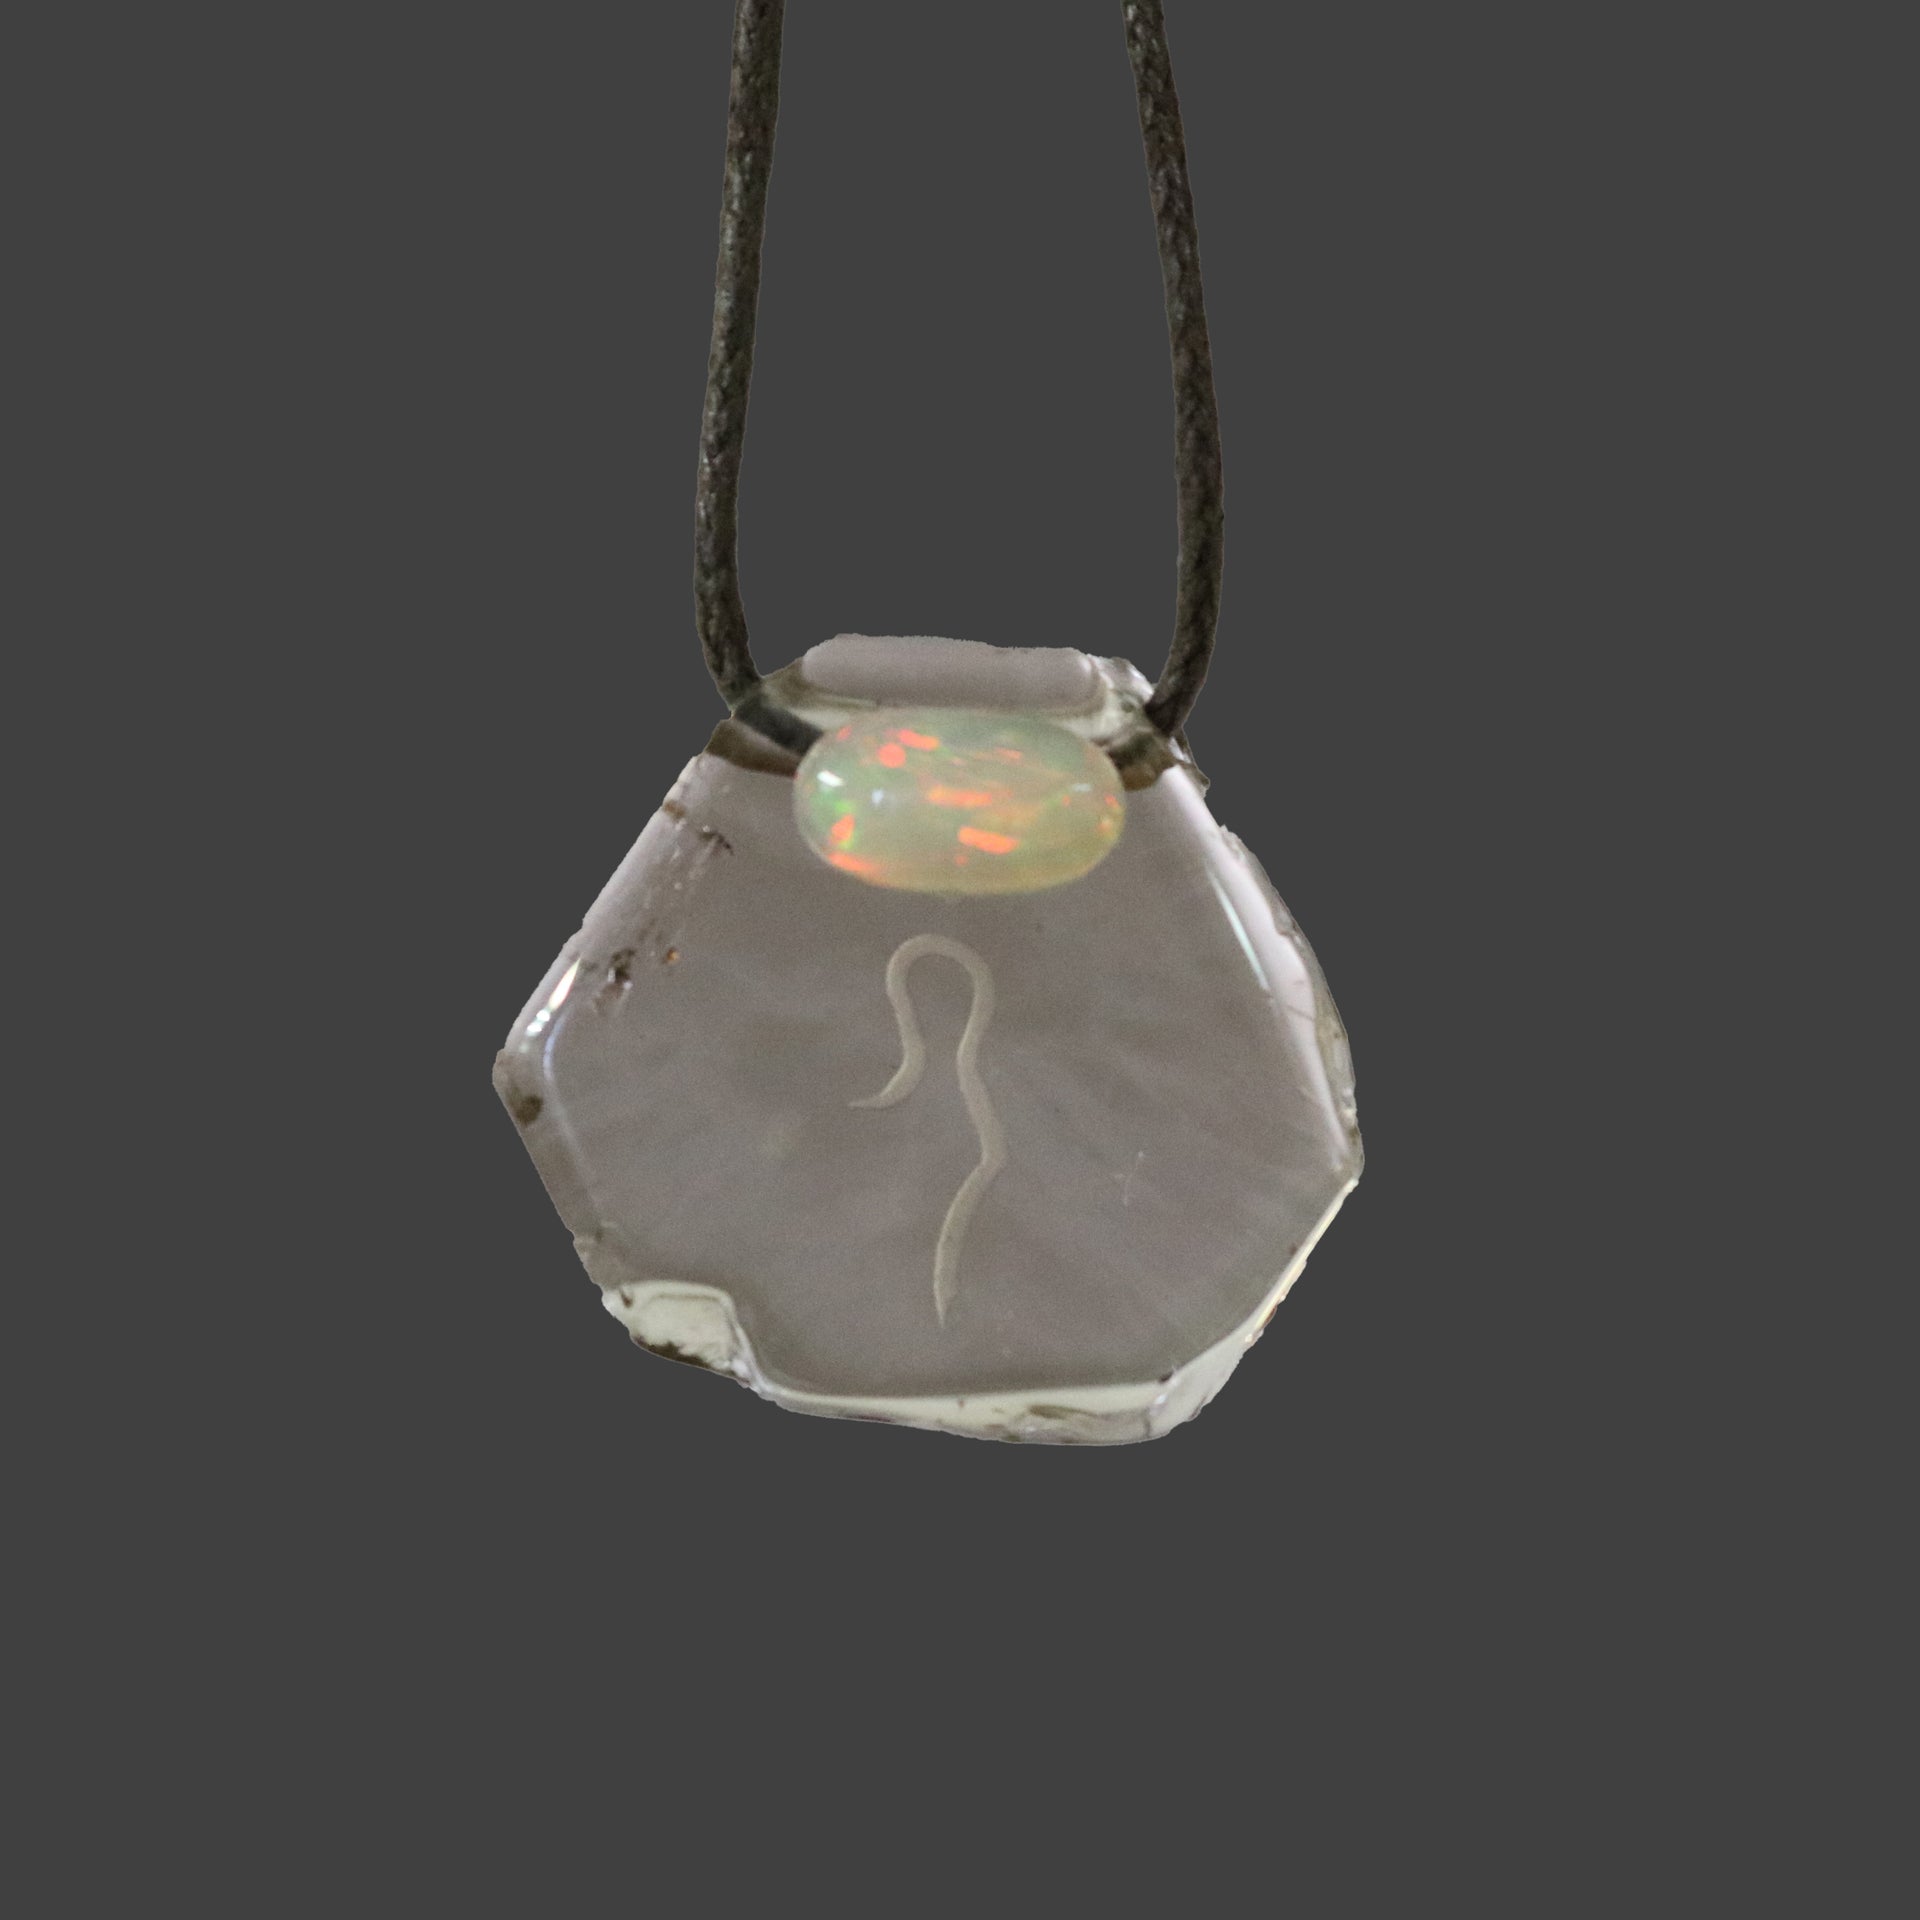 Smoky Quartz Pendant with Ethiopian Opal Accent Divine and Feminine Symbol